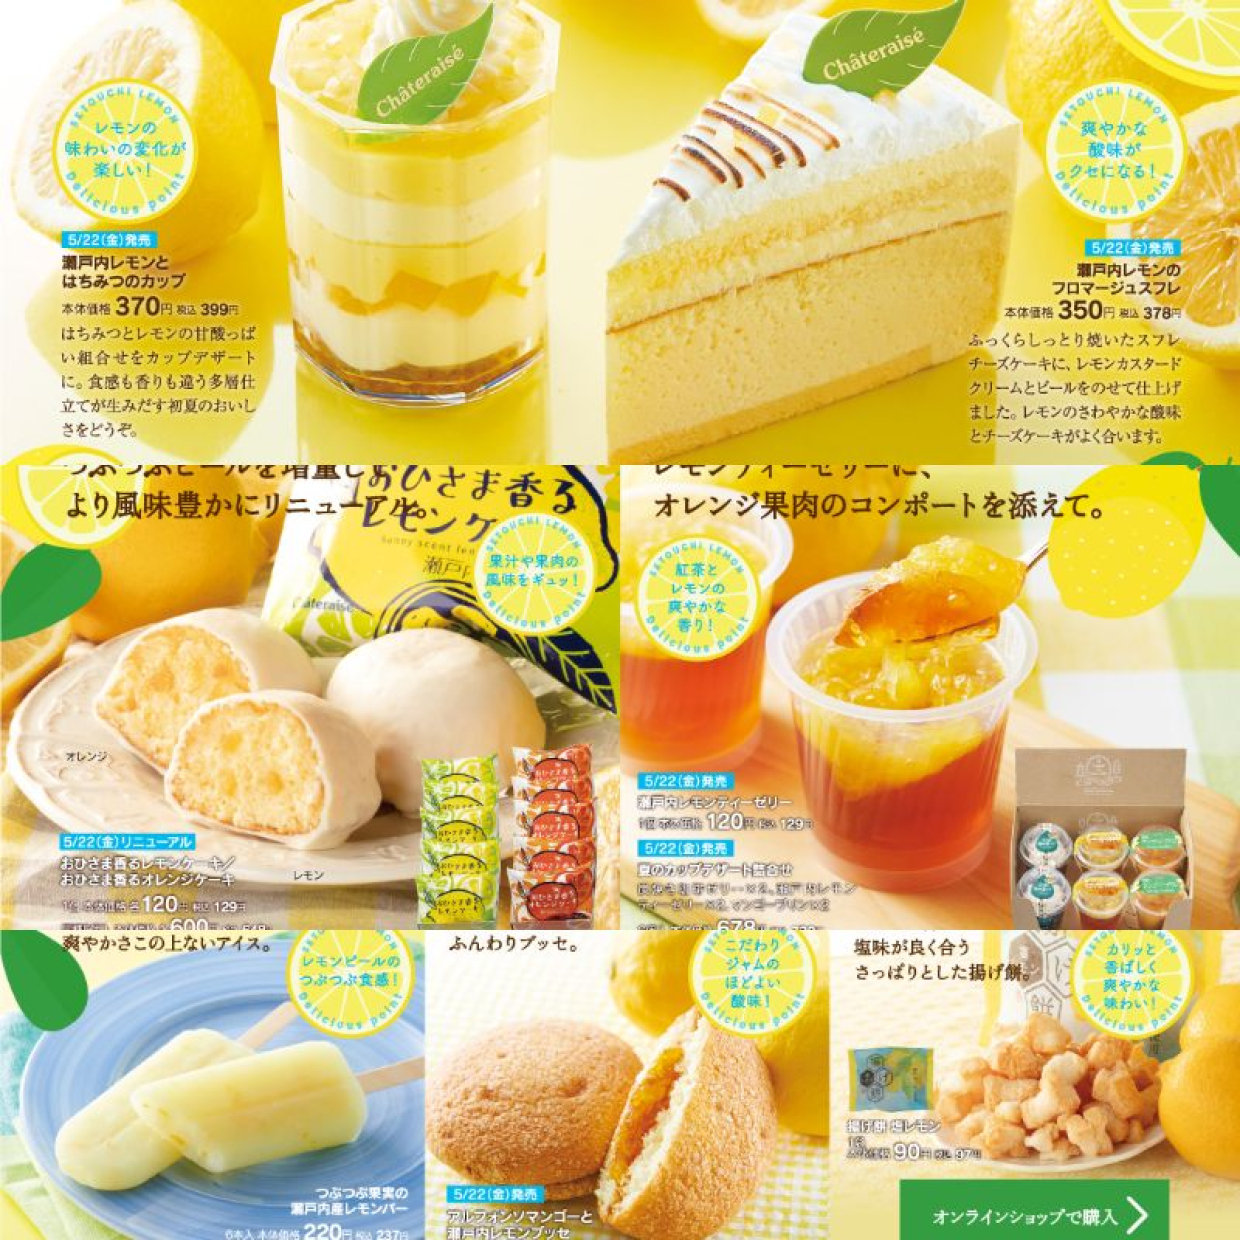  【シャトレーゼ】「瀬戸内レモンフェア」開催中！甘酸っぱい瀬戸内レモンを堪能できるチャンス！ 